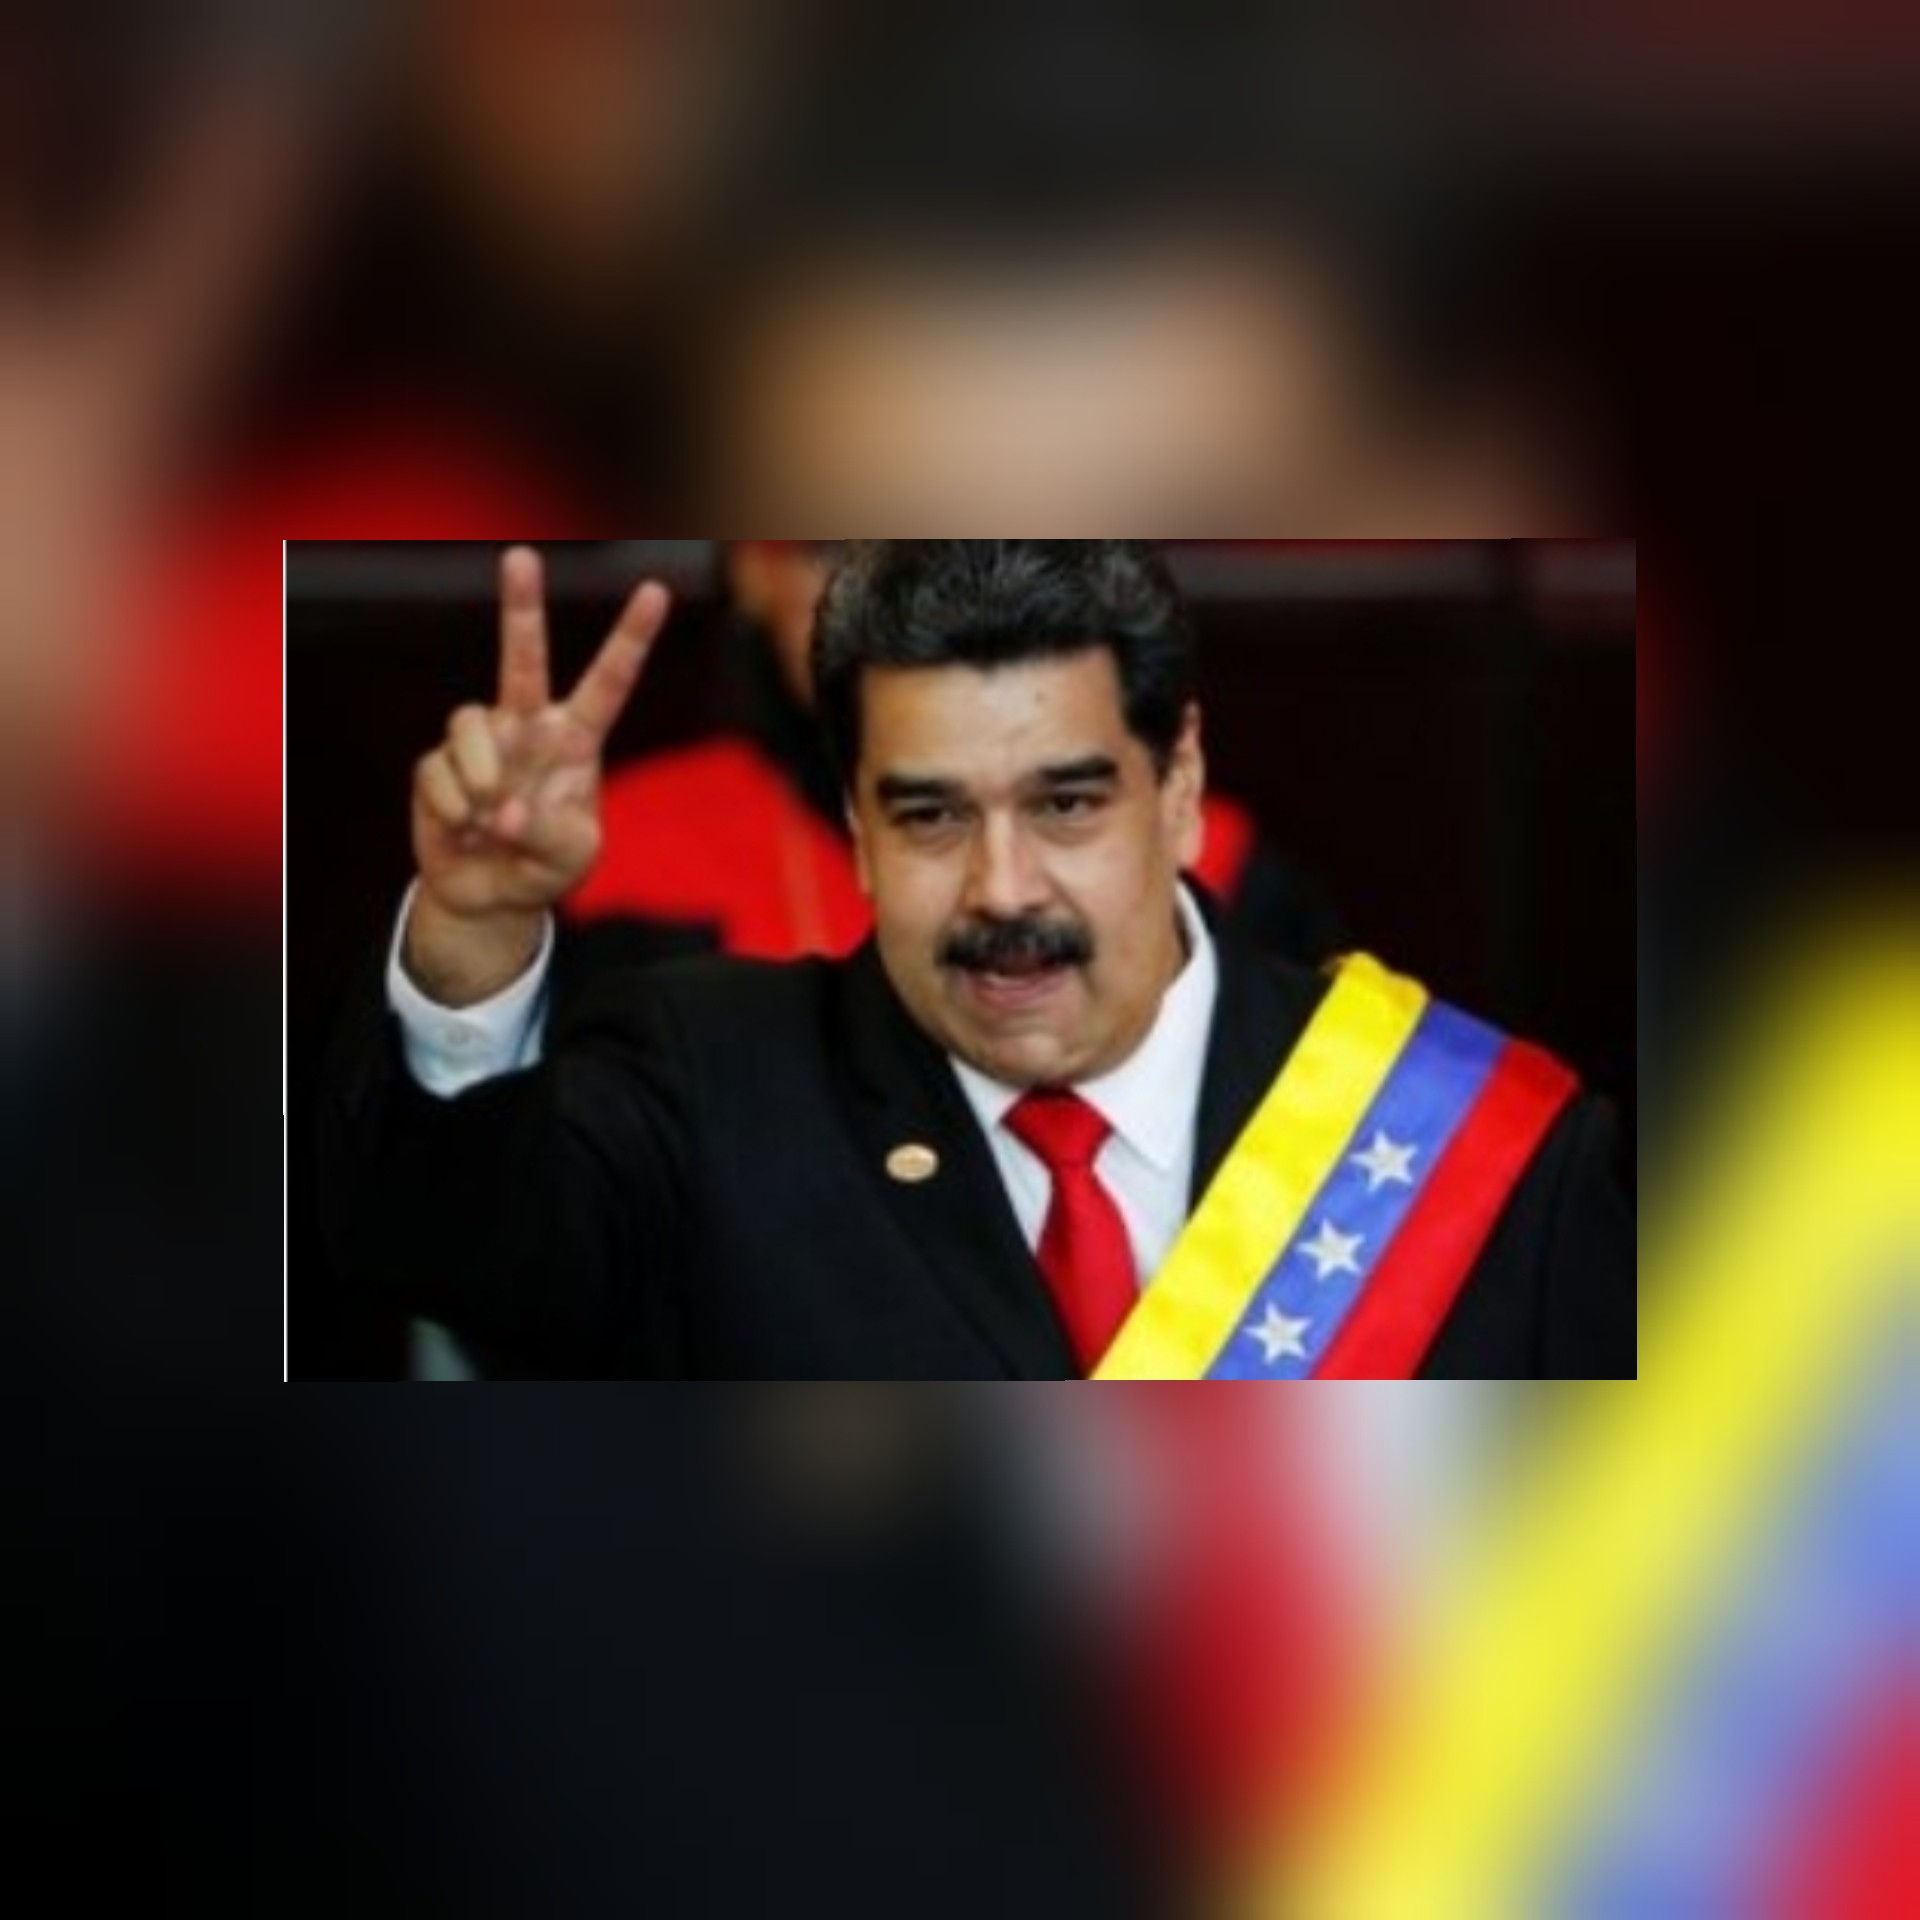 الرئيس الفنزويلي يعلن عن زيارة مرتقبة لايران لتوقيع اتفاقيات في المجال العسكري والطاقة